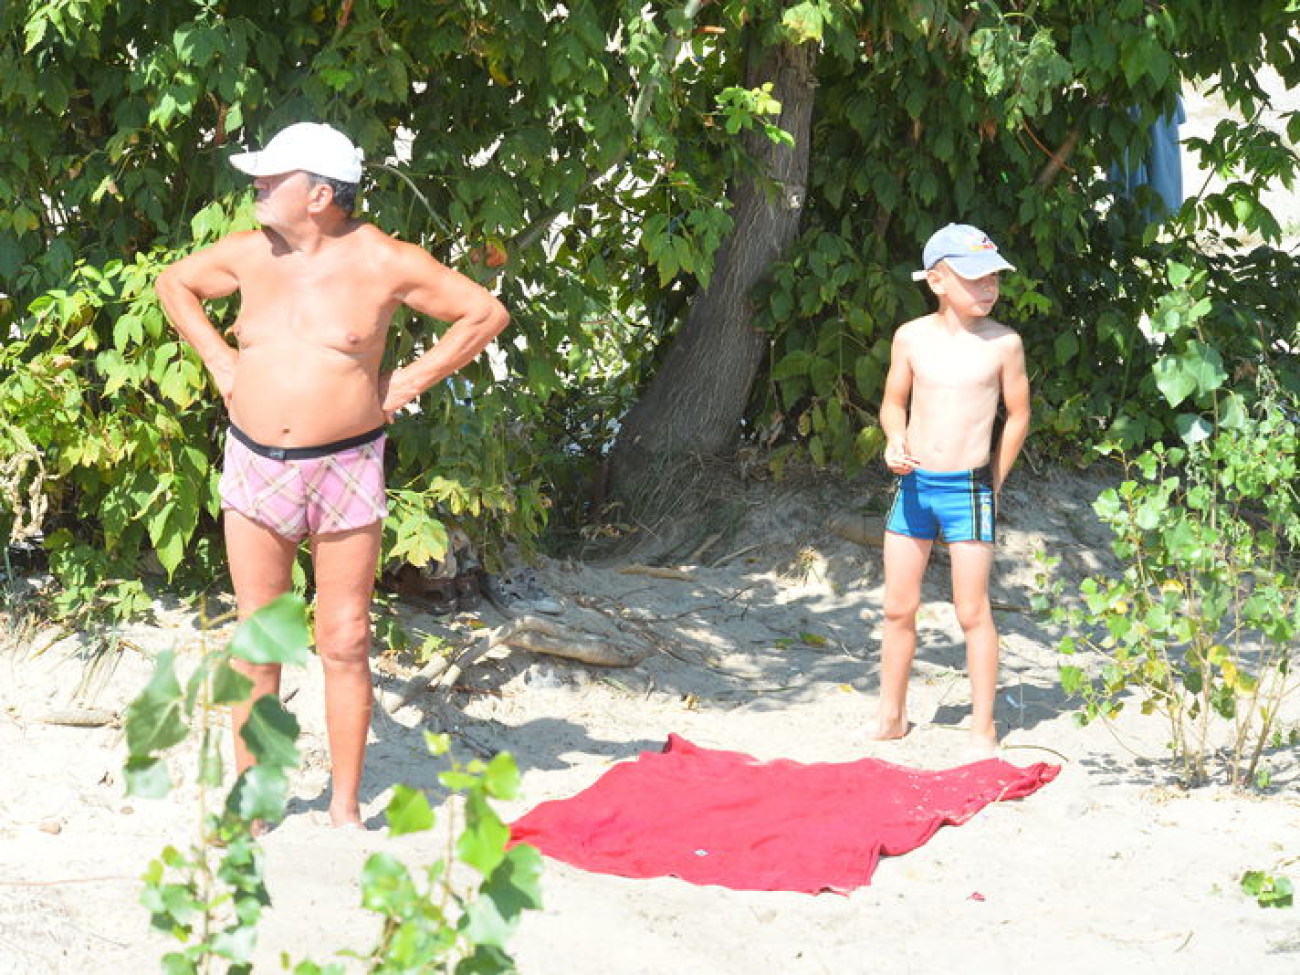 В киевских водоемах яблоку негде упасть, хотя СЭС запретила купаться на 13 пляжах